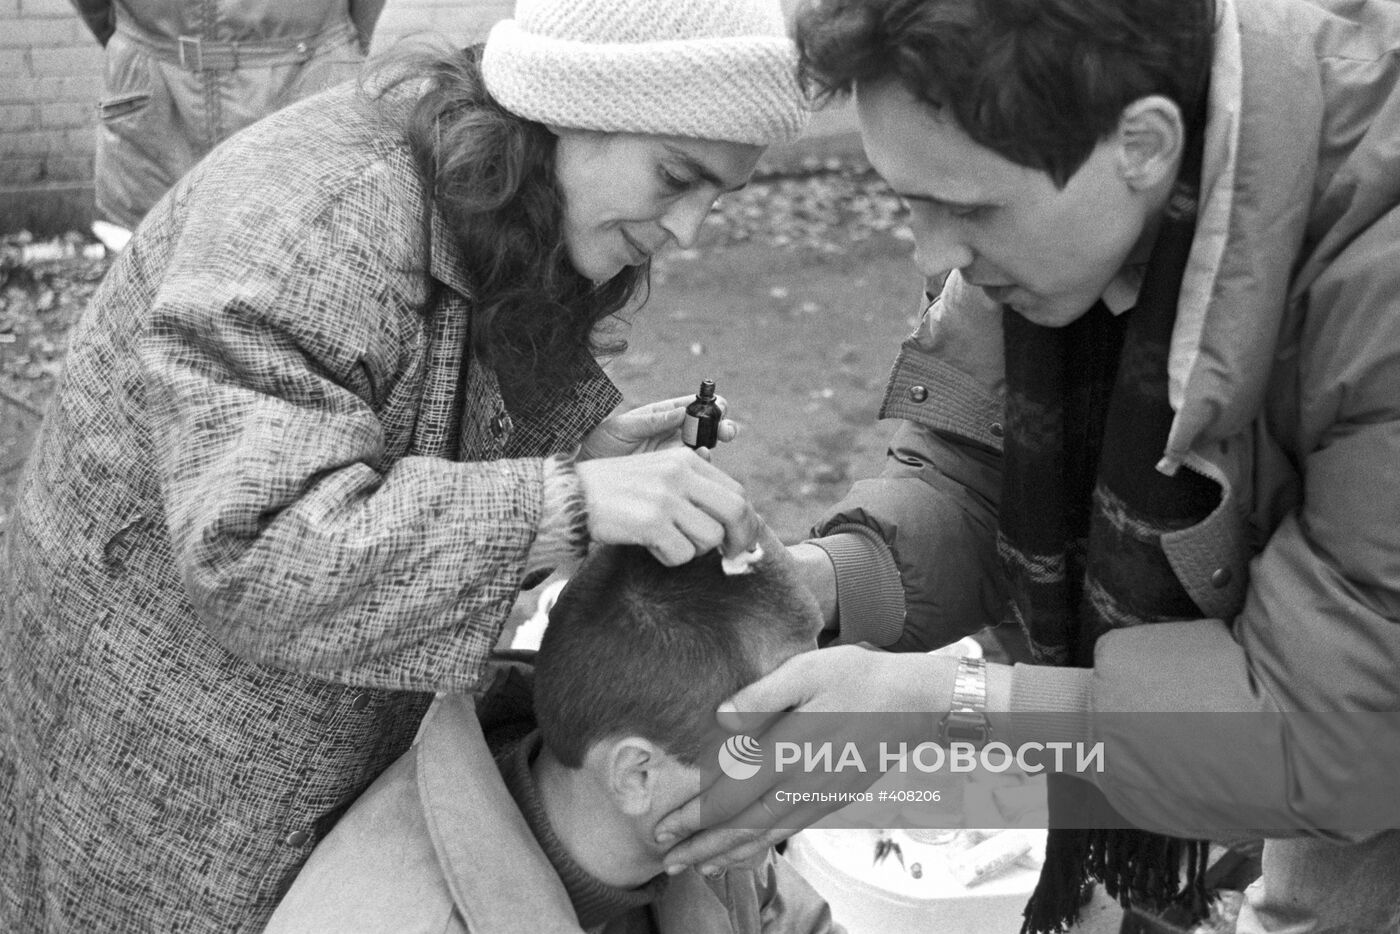 Оказание помощи раненому на улице Станиславского в Москве